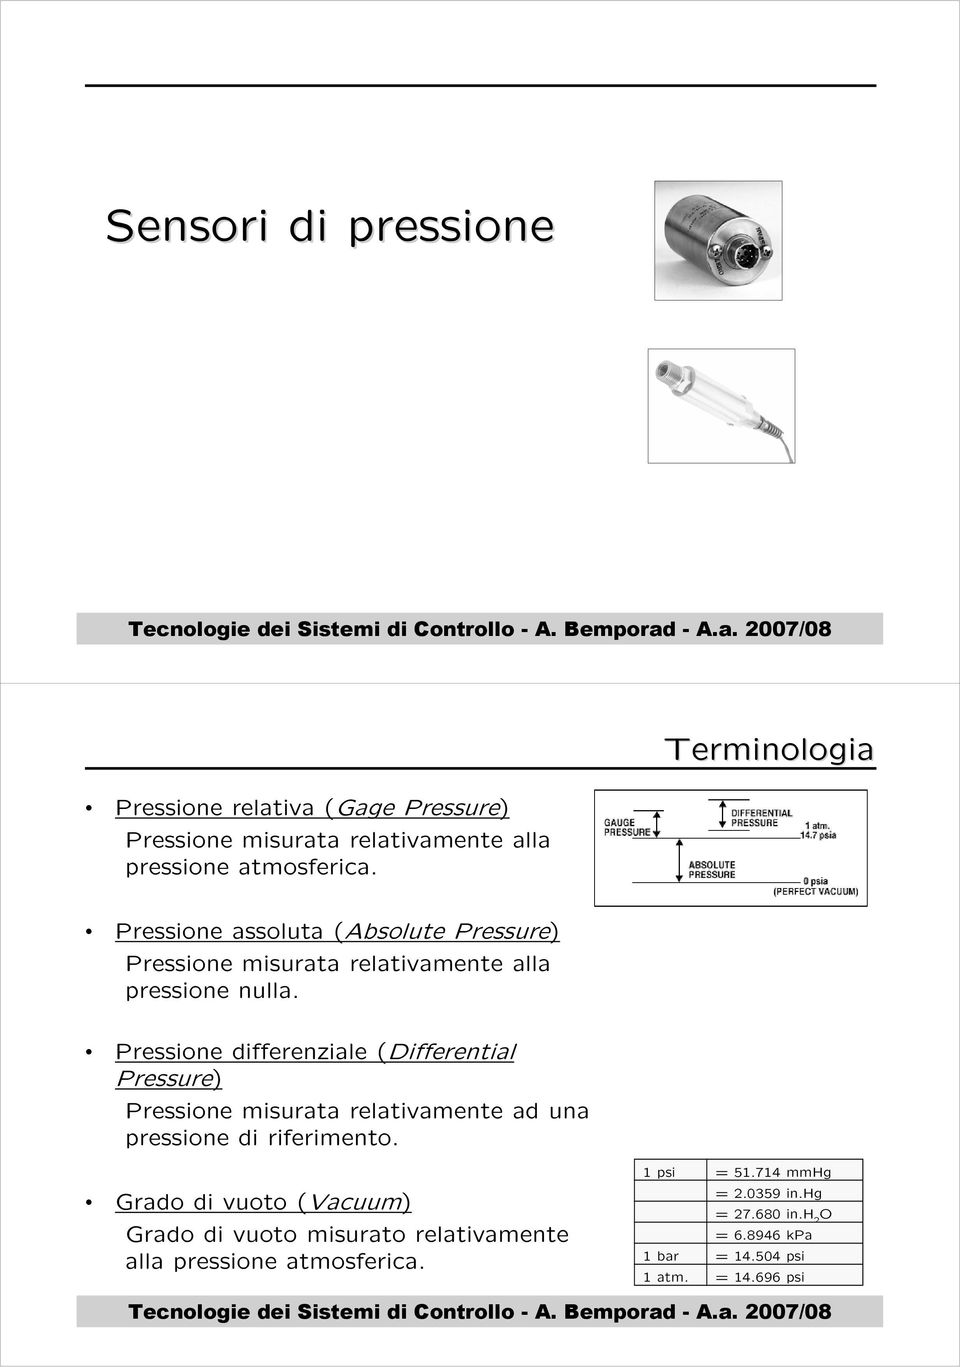 Pressione differenziale (Differential Pressure) Pressione misurata relativamente ad una pressione di riferimento.